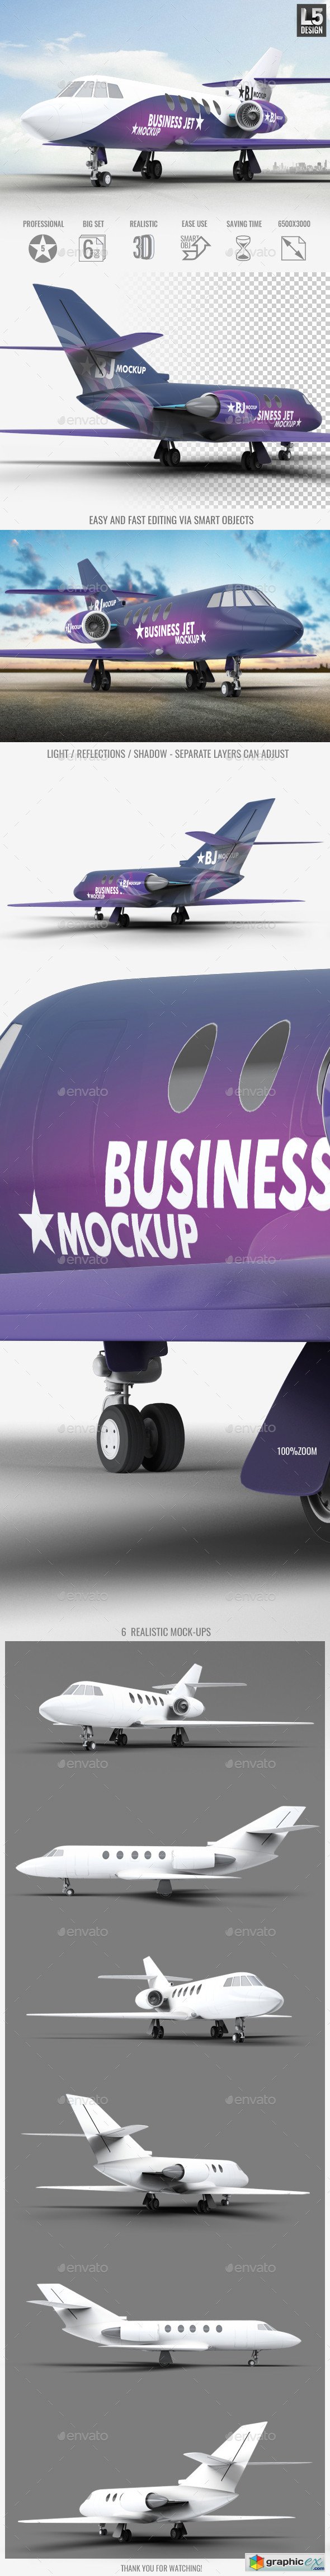 Business Jet Mock-Up